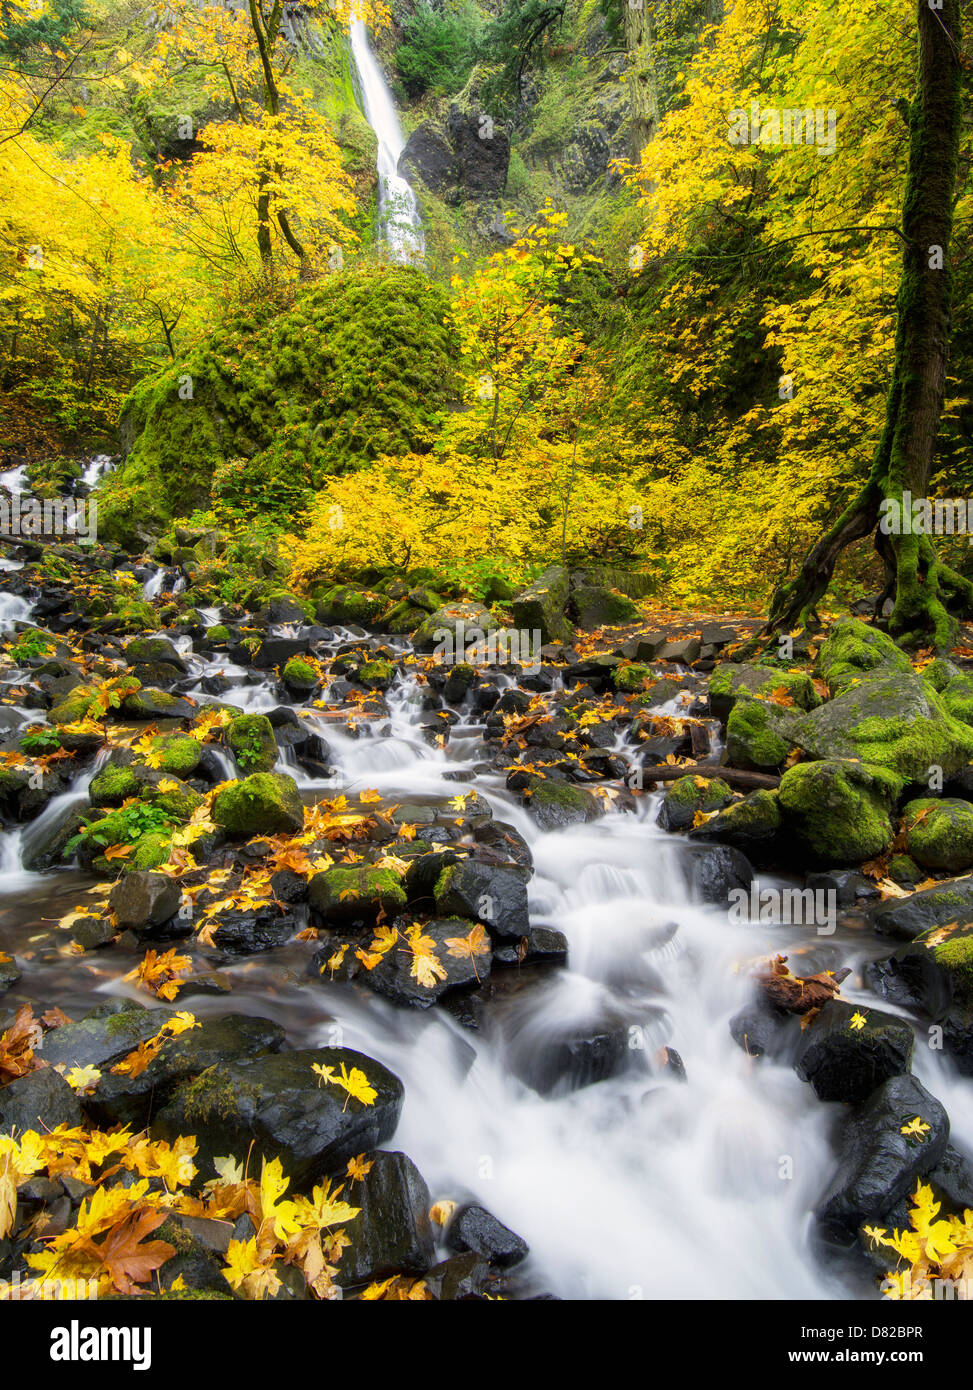 La famine Creek et de cascades avec des couleurs d'automne.Columbia River Gorge National Scenic Area, New York Banque D'Images